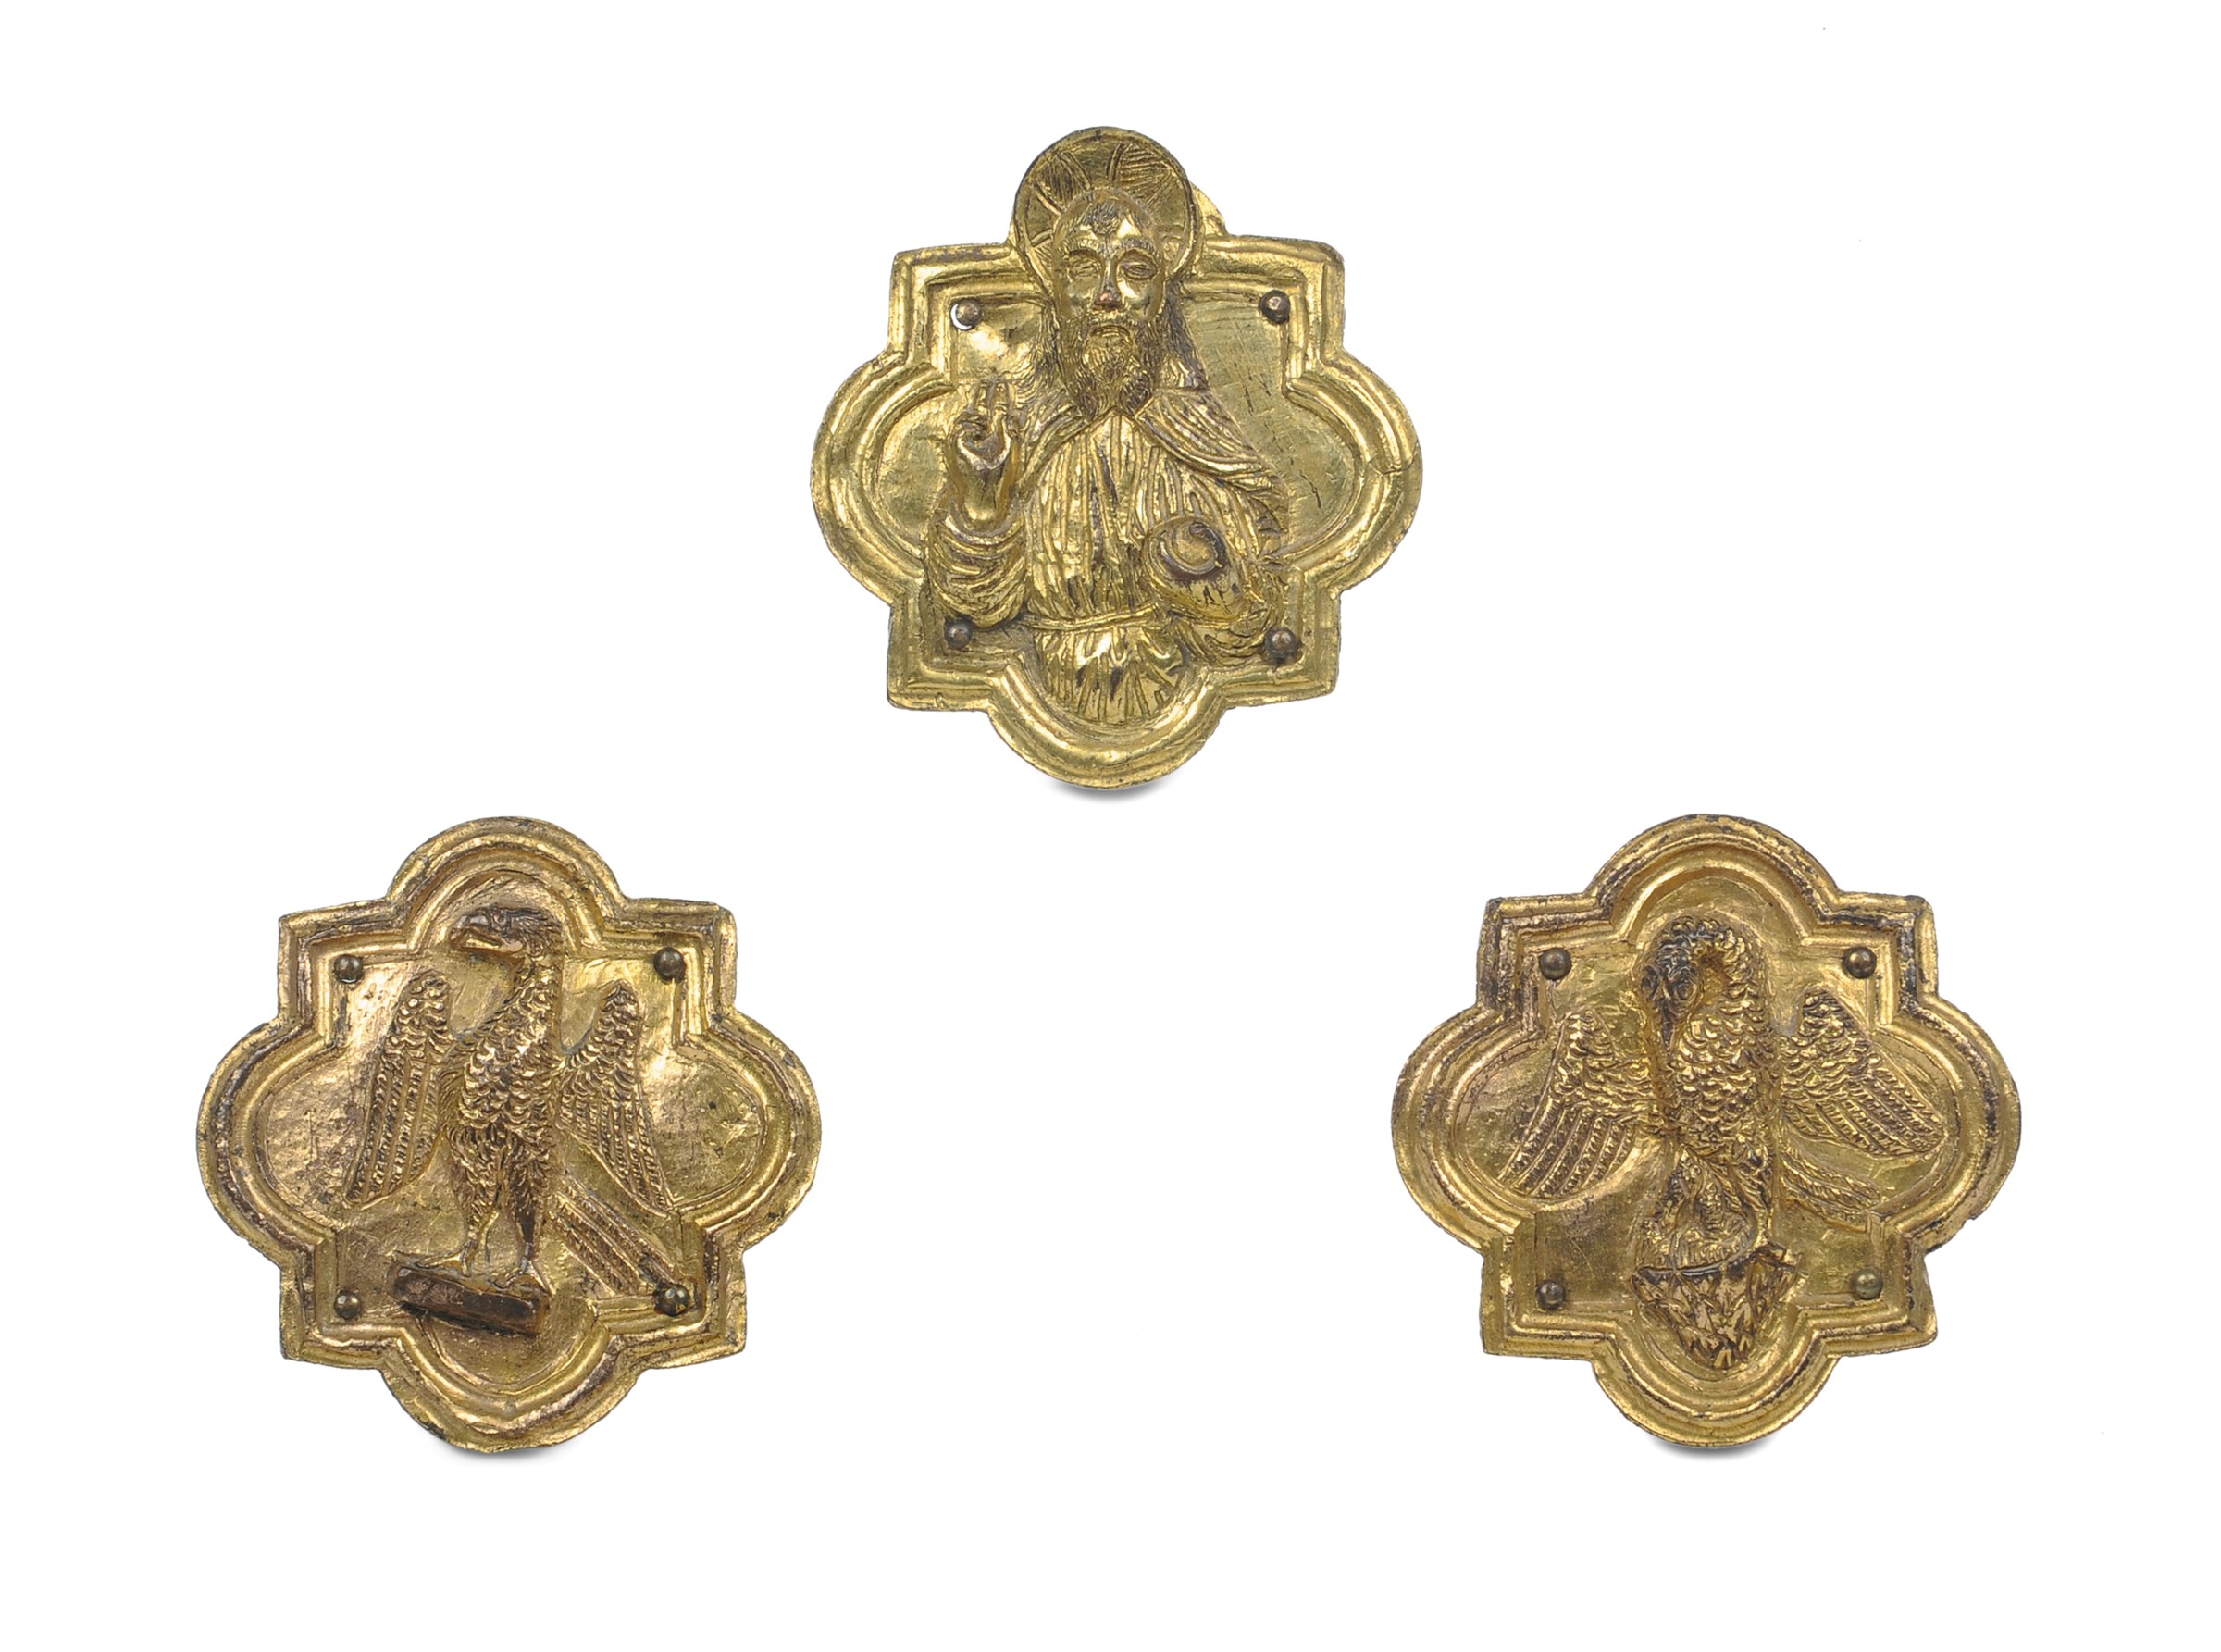 Italia del nord, XV secolo, Insieme di tre placche polilobate in bronzo fuso, cesellato e dorato con